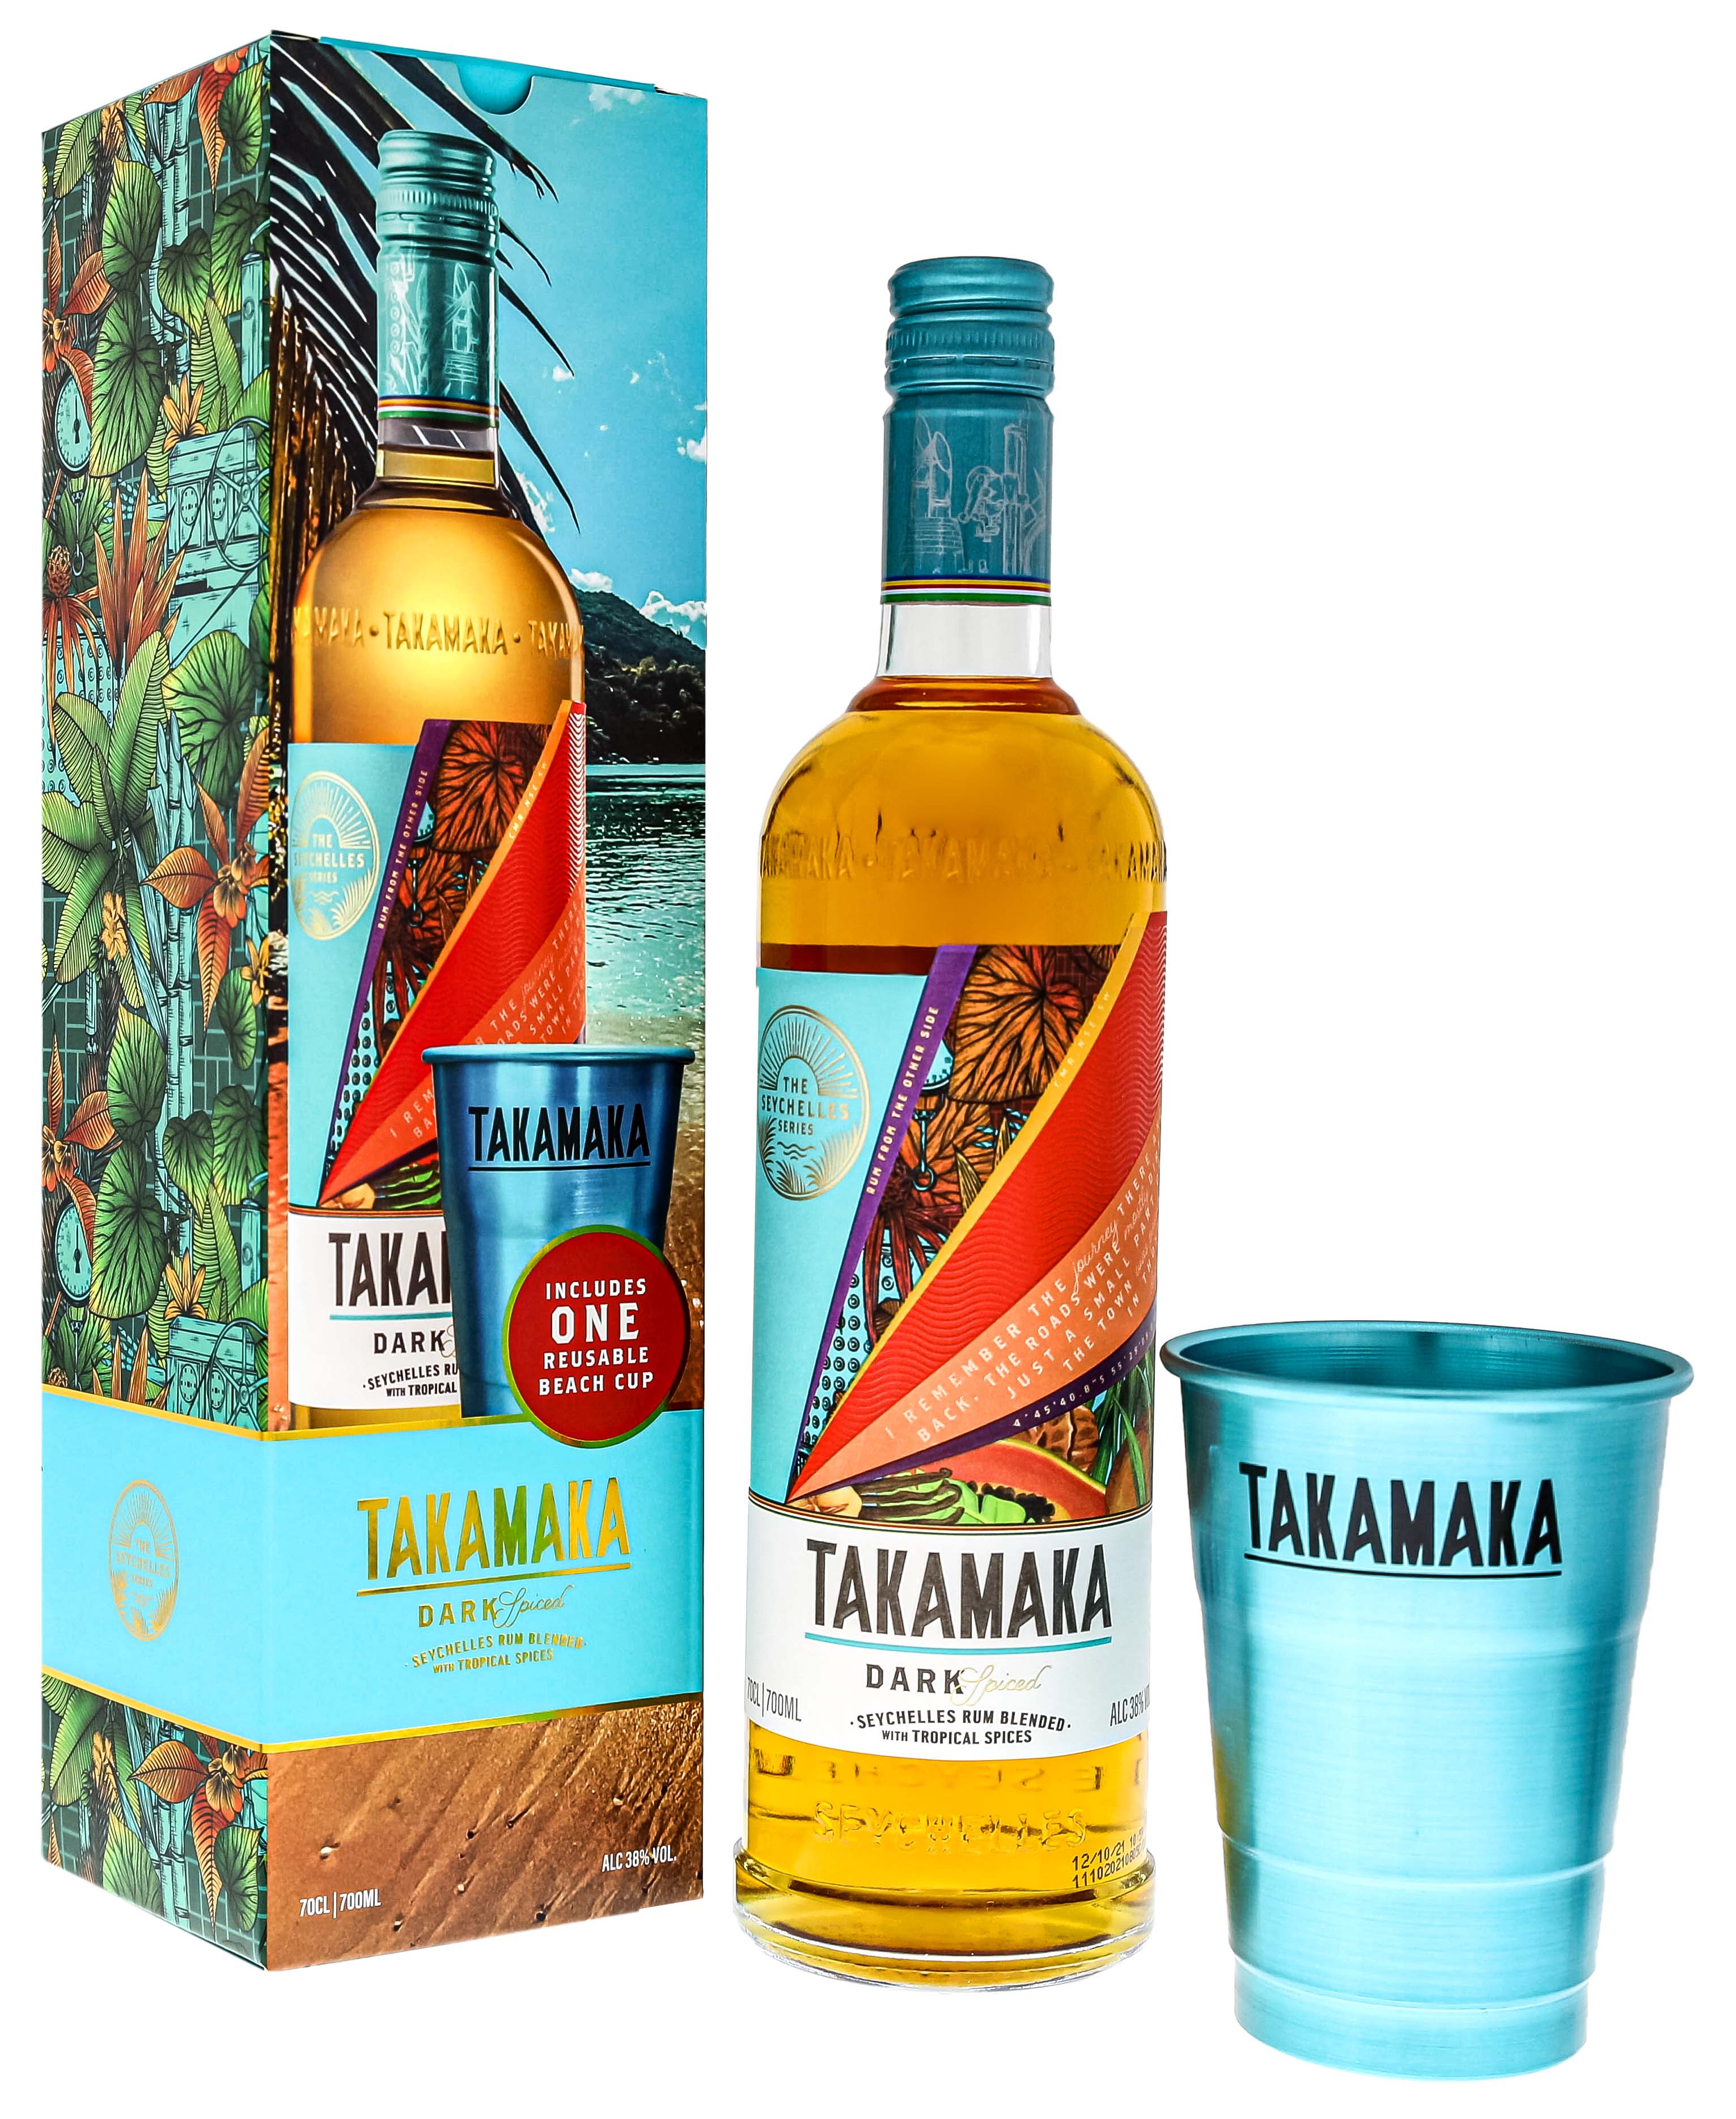 Takamaka Dark Spiced 0,7L Set mit Beach Cup jetzt kaufen im Drinkology  Online Shop!